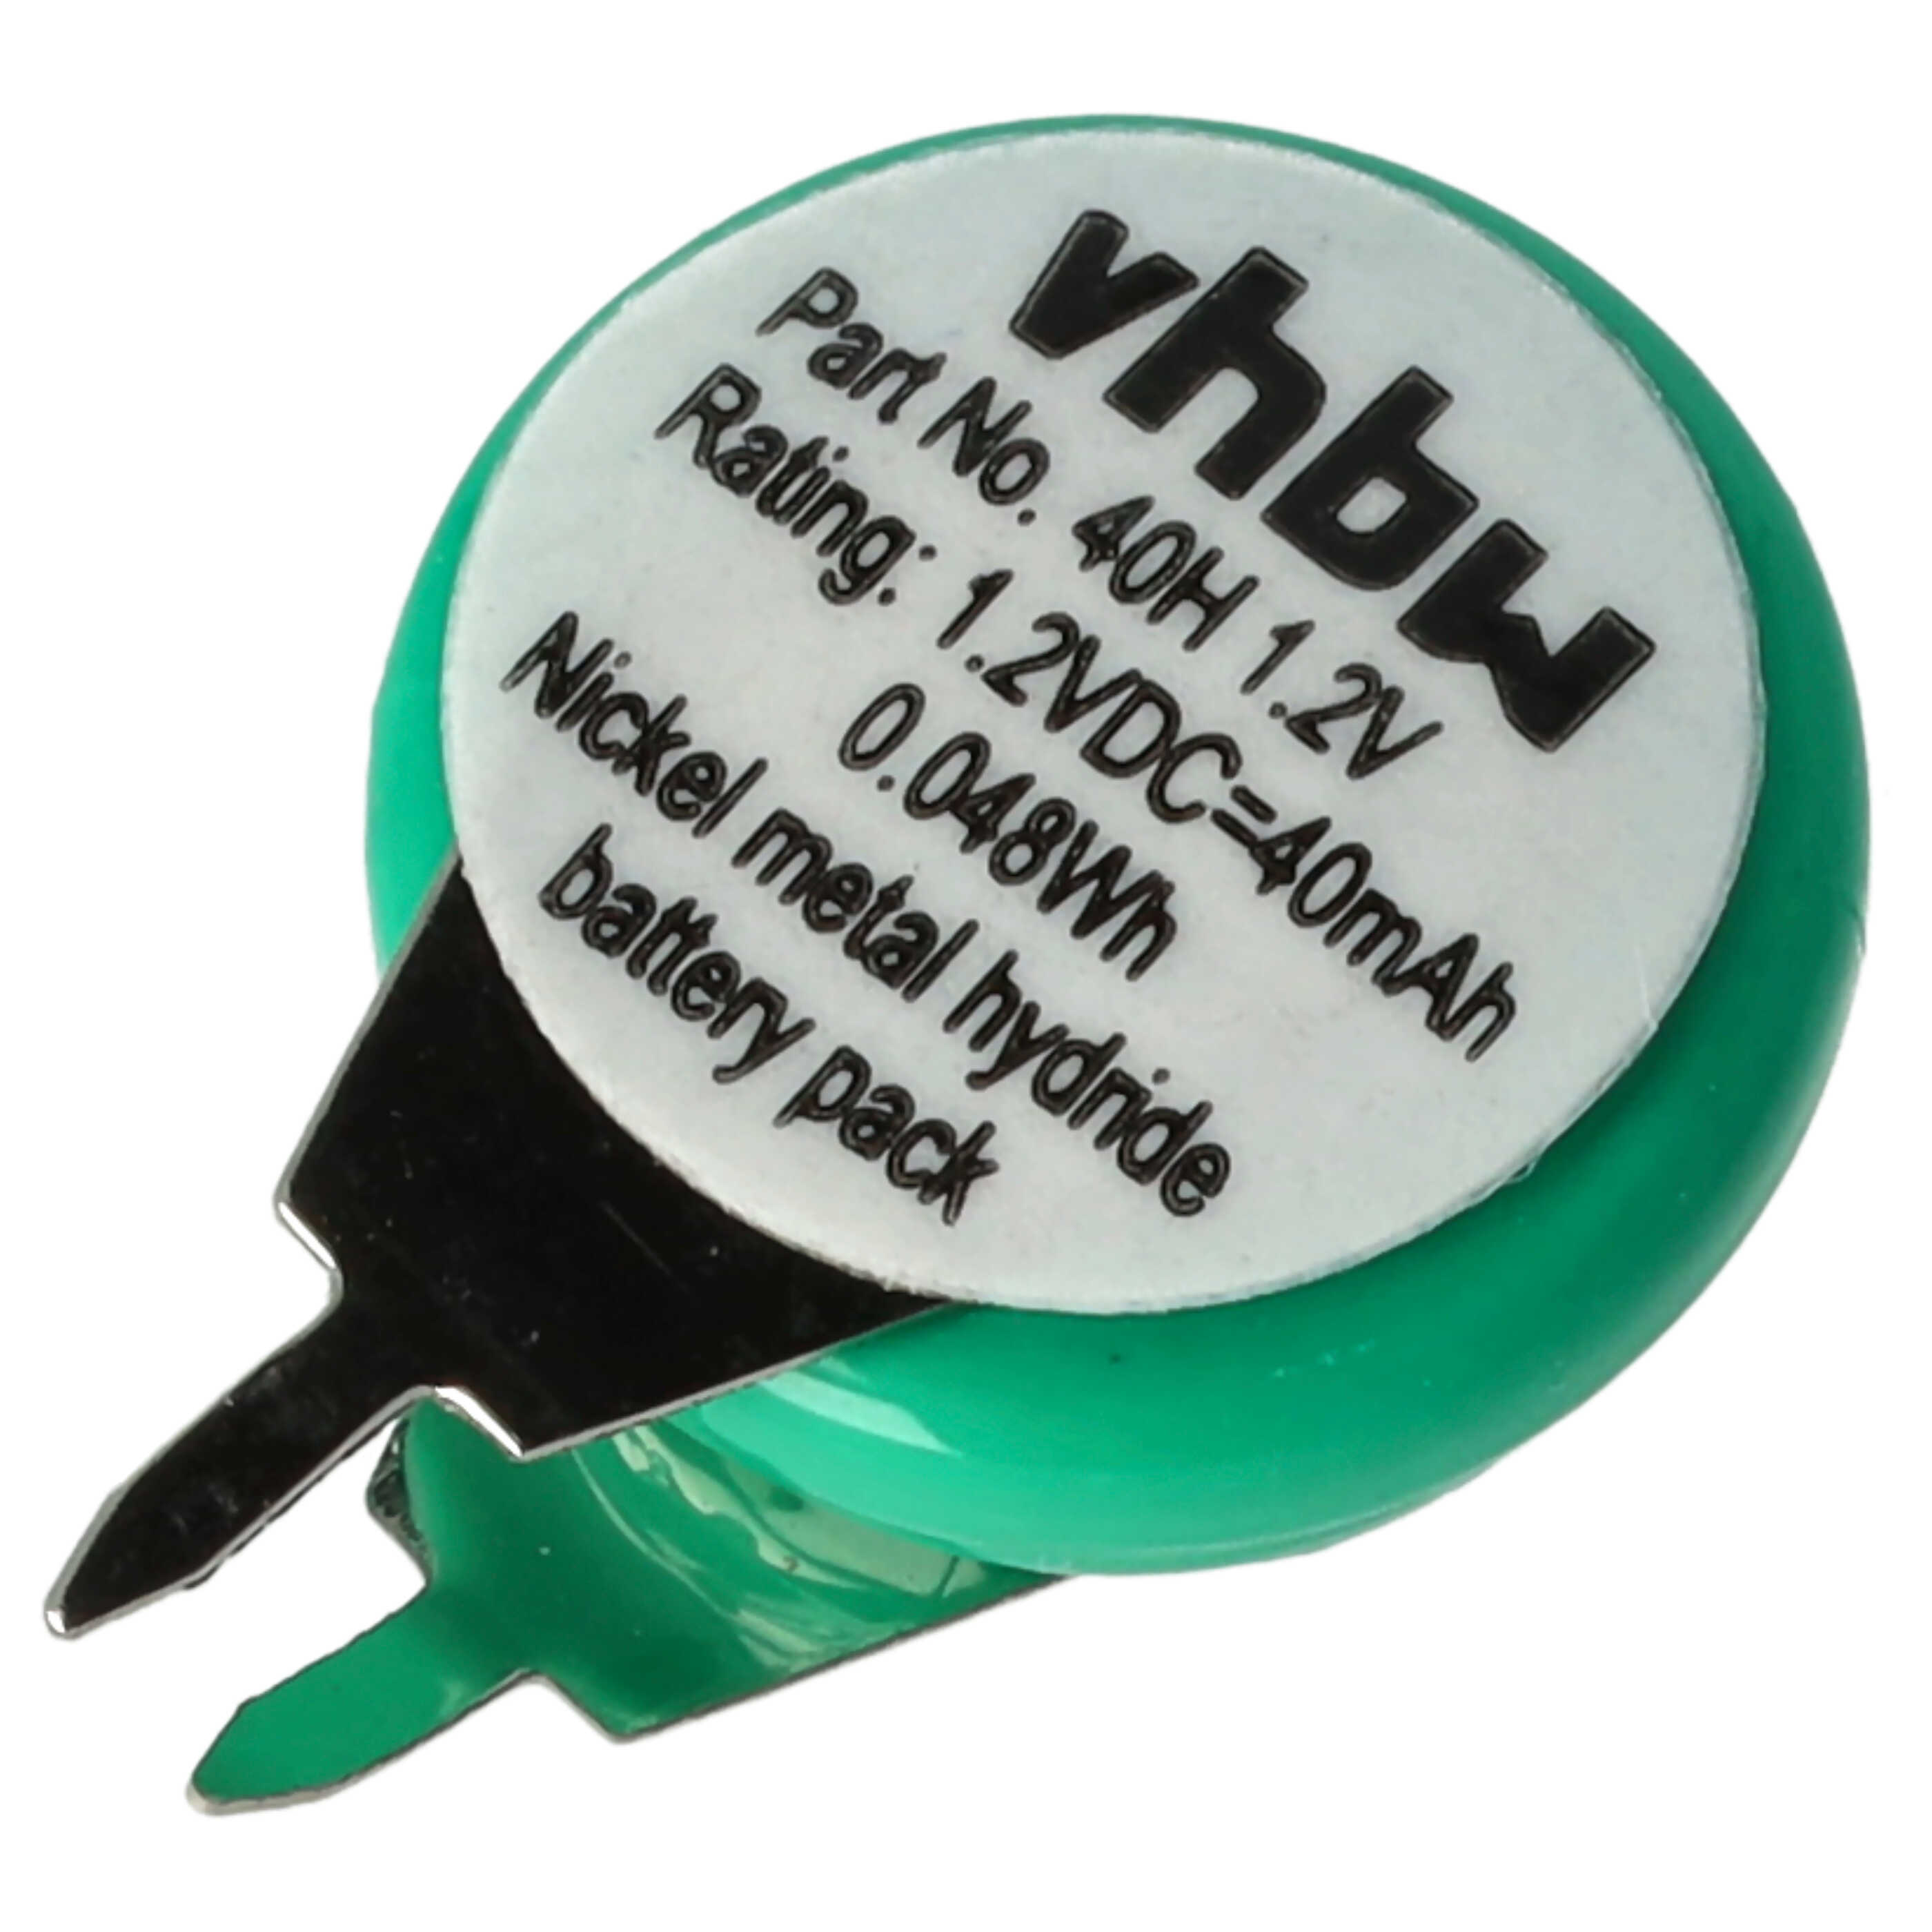 Batteria a bottone (1x cella) tipo 1/V40H 2 pin sostituisce 1/V40H per modellismo, luci solari ecc. 